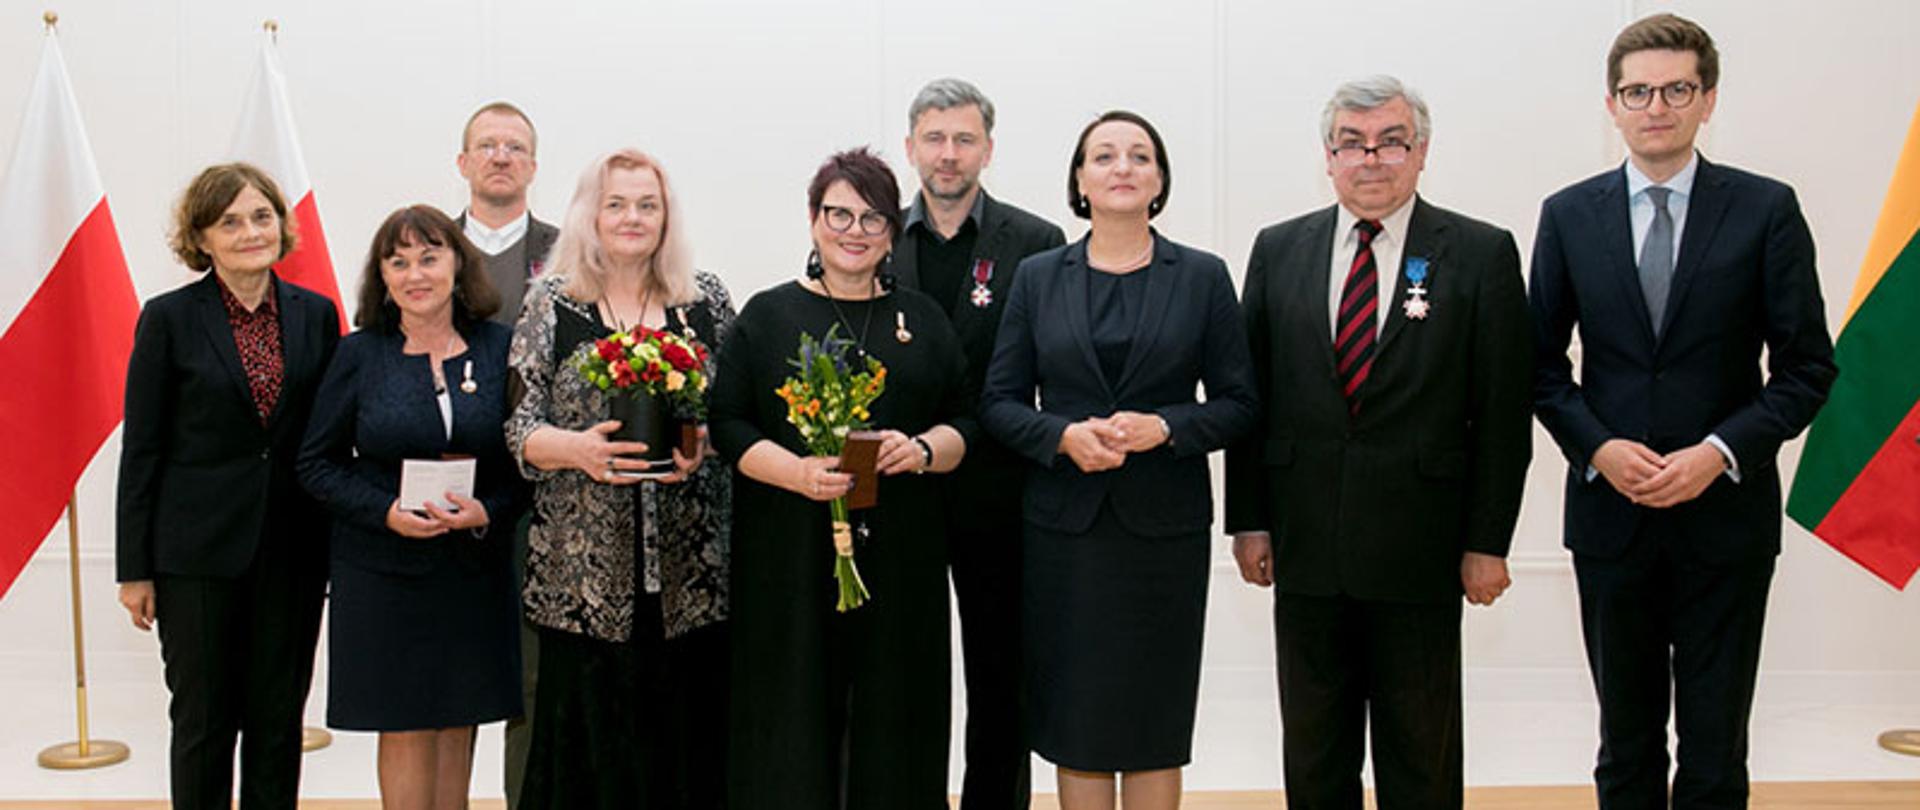 Wiceminister kultury Magdalena Gawin odznaczyła litewskich działaczy kultury, Fot. Roman Niedźwiecki